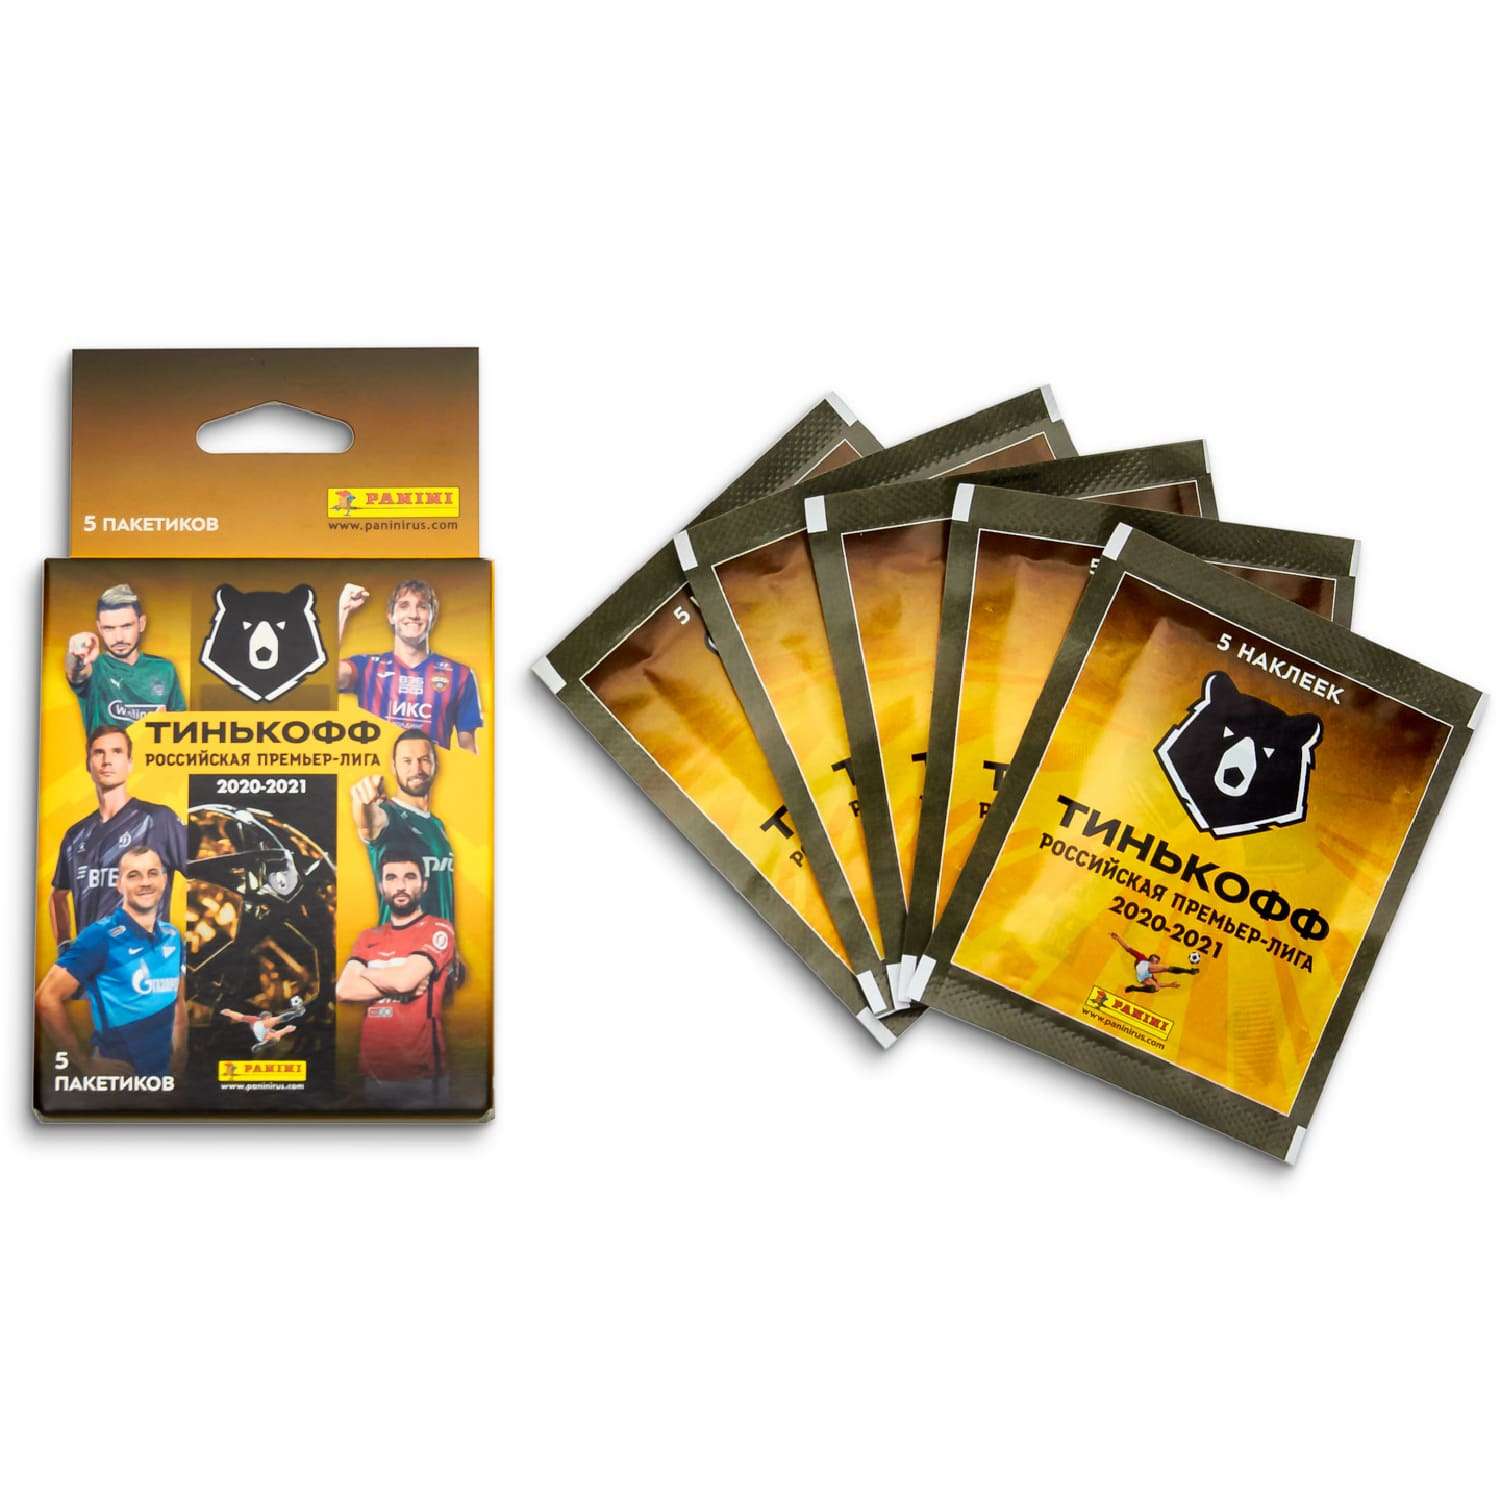 Набор Panini с 5 пакетиками наклеек Российская премьер лига 2020-2021 в непрозрачной упаковке (Сюрприз) - фото 2